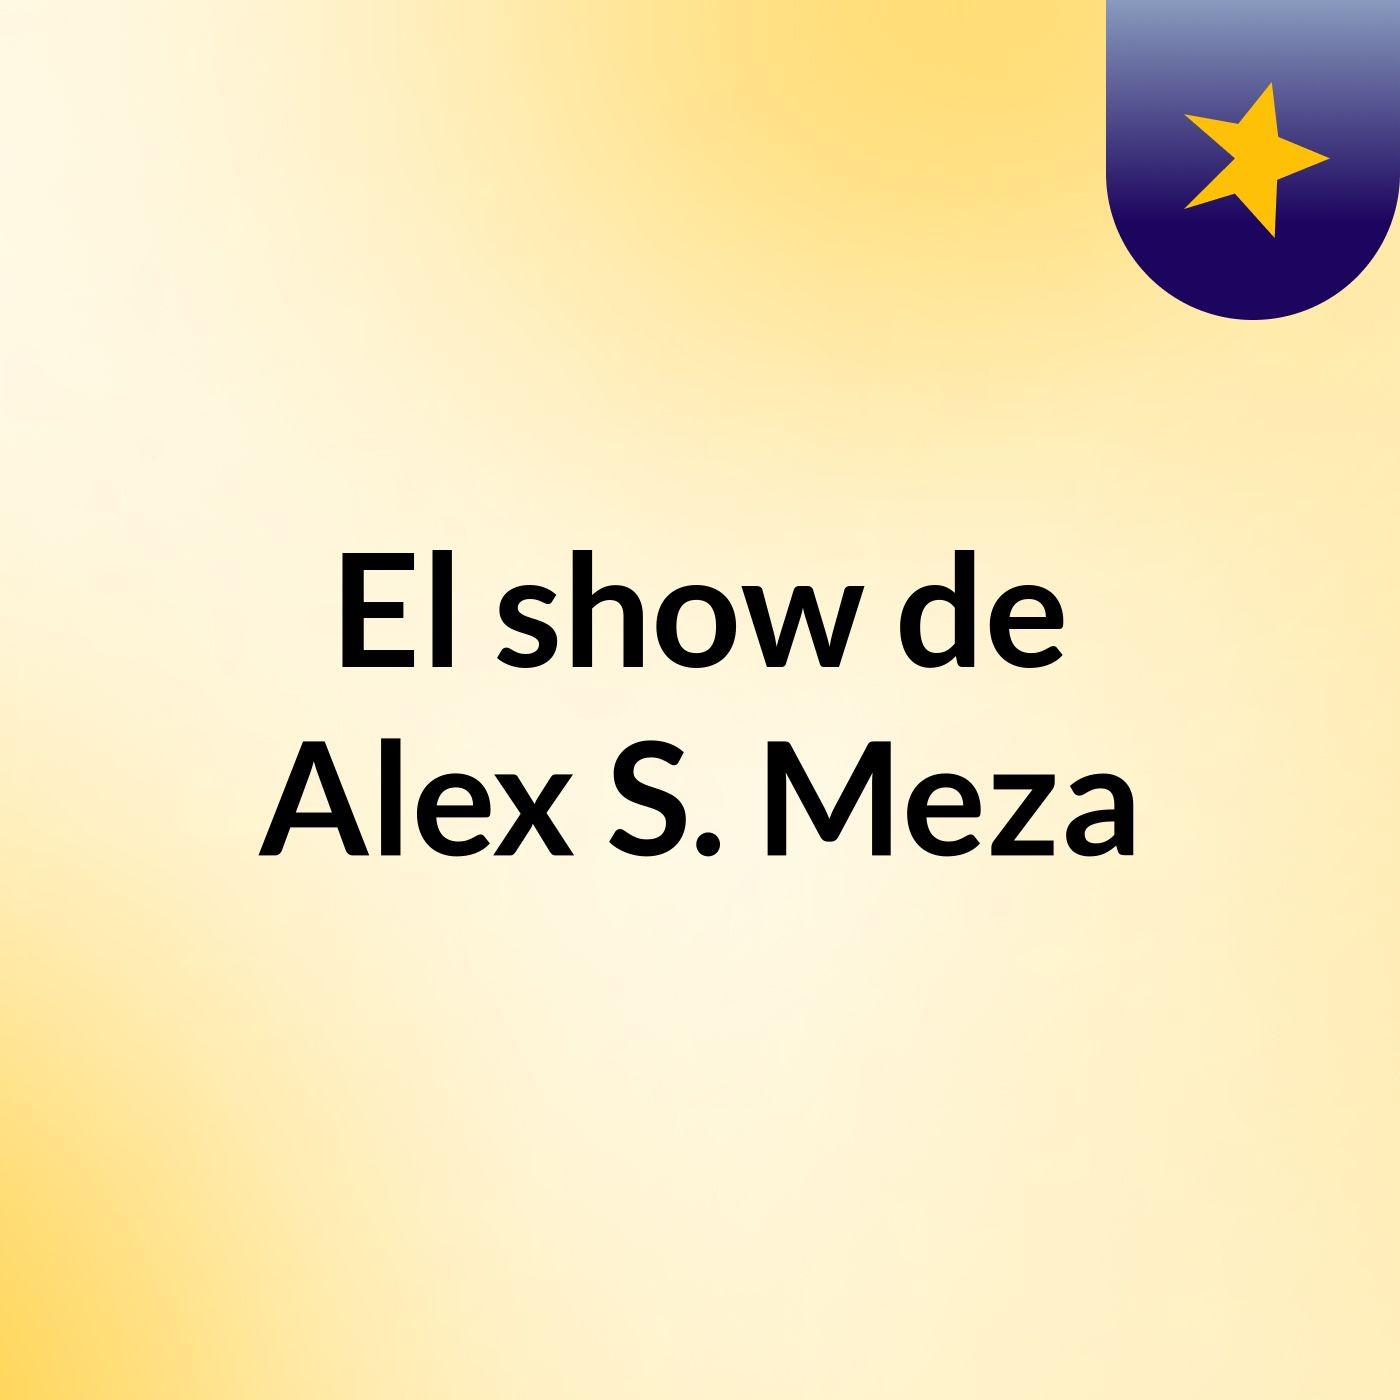 El show de Alex S. Meza